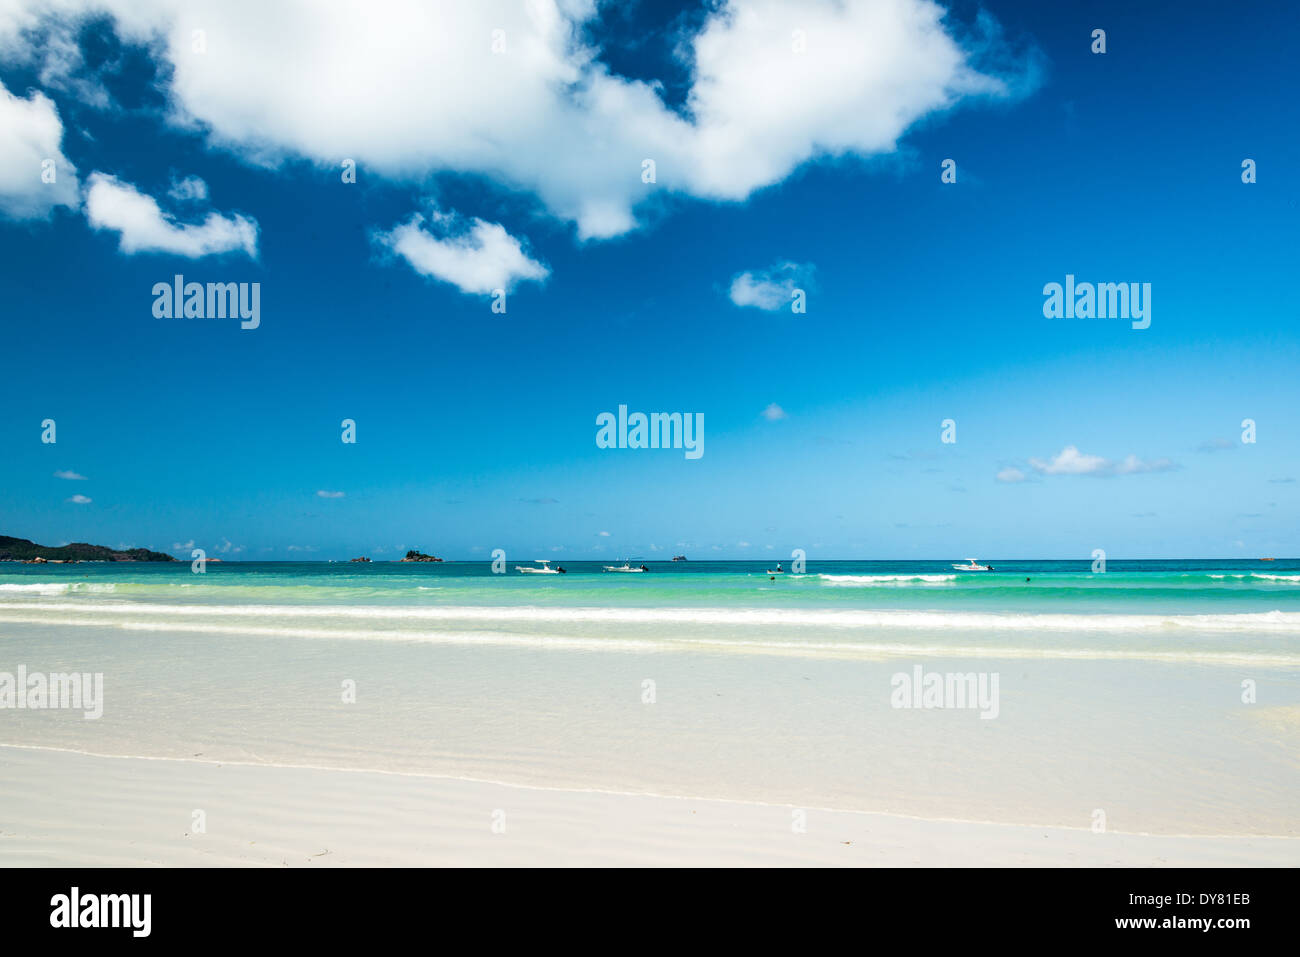 Plage de sable blanc avec une mer turquoise Banque D'Images